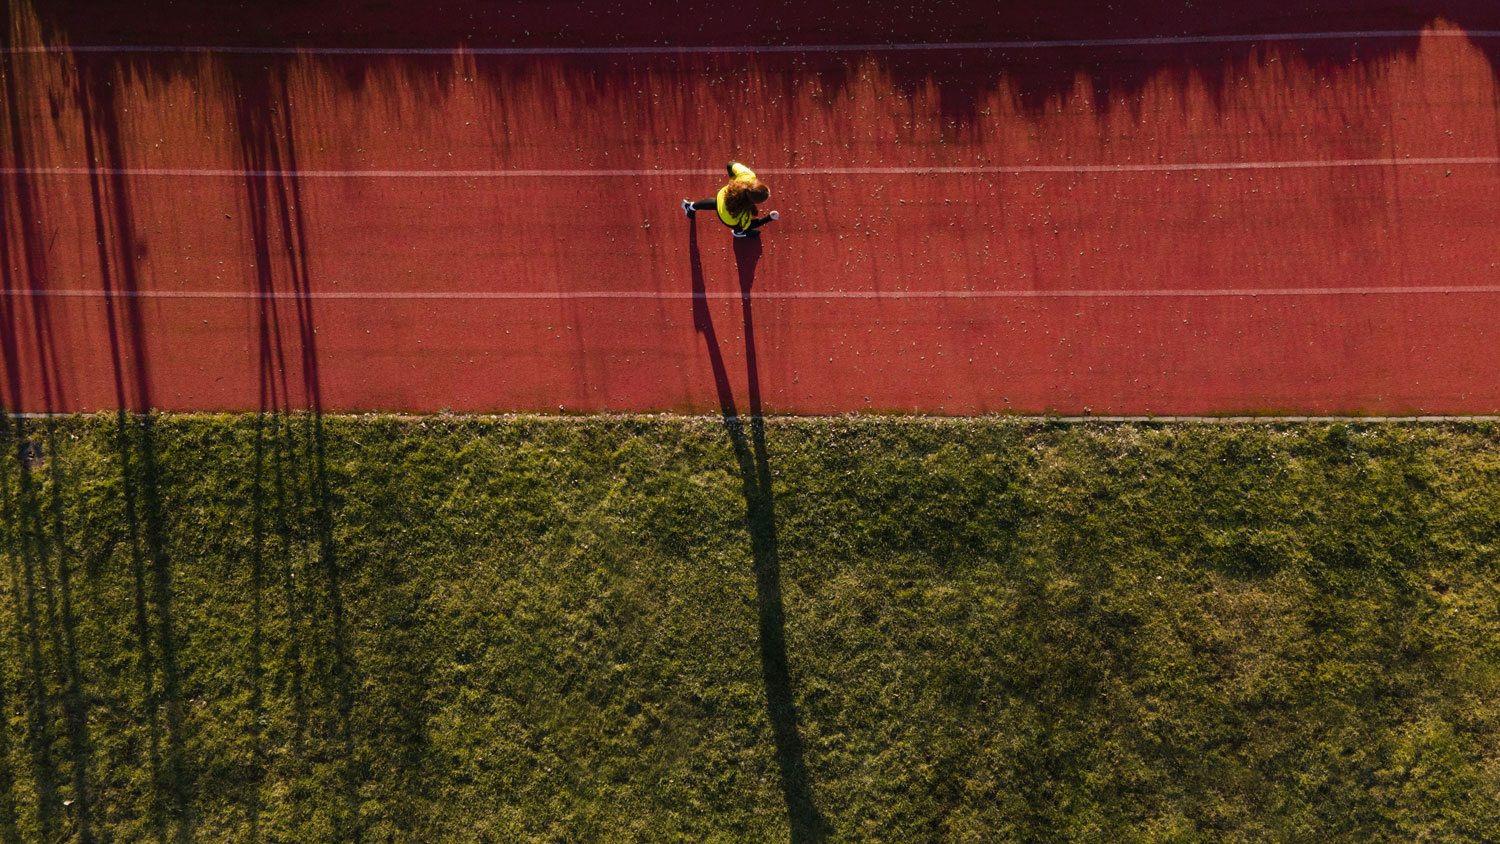 Vue d'en haut d'une personne courant sur une piste d'athlétisme et son ombre projettés sur le sol à côté